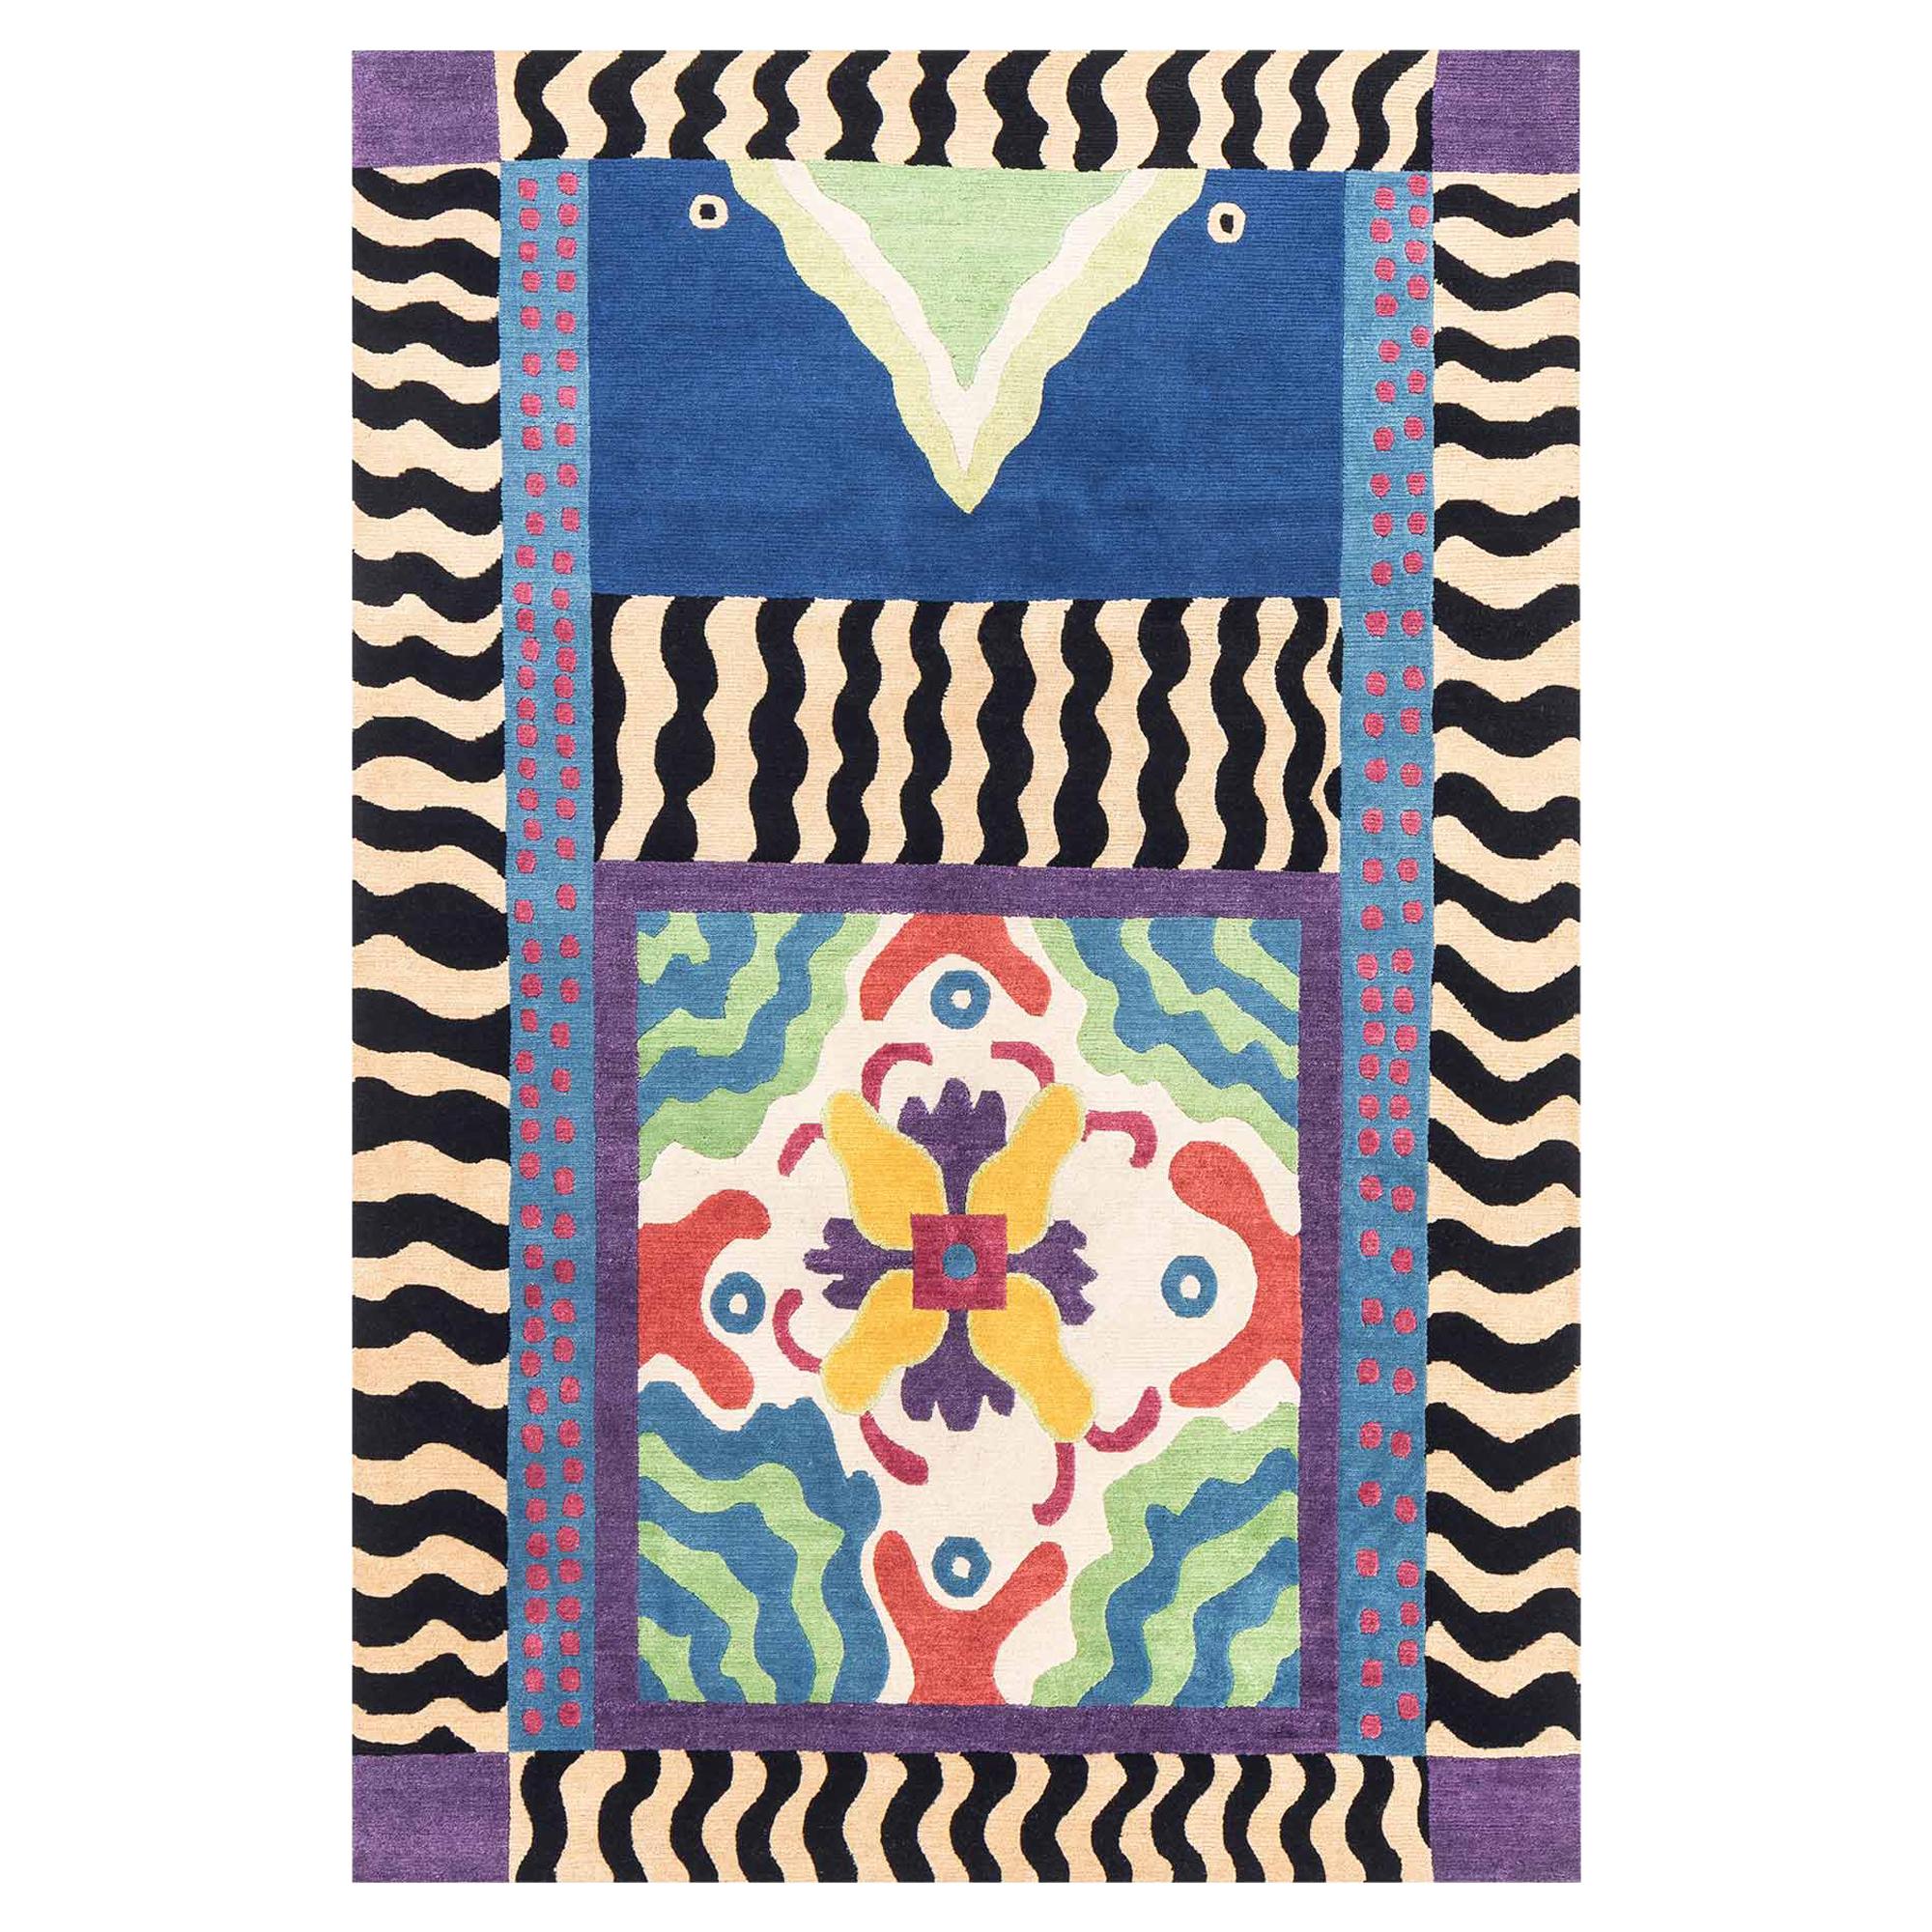 L. Sottovento Woollen Carpet by Nathalie du Pasquier for Post Design/Memphis